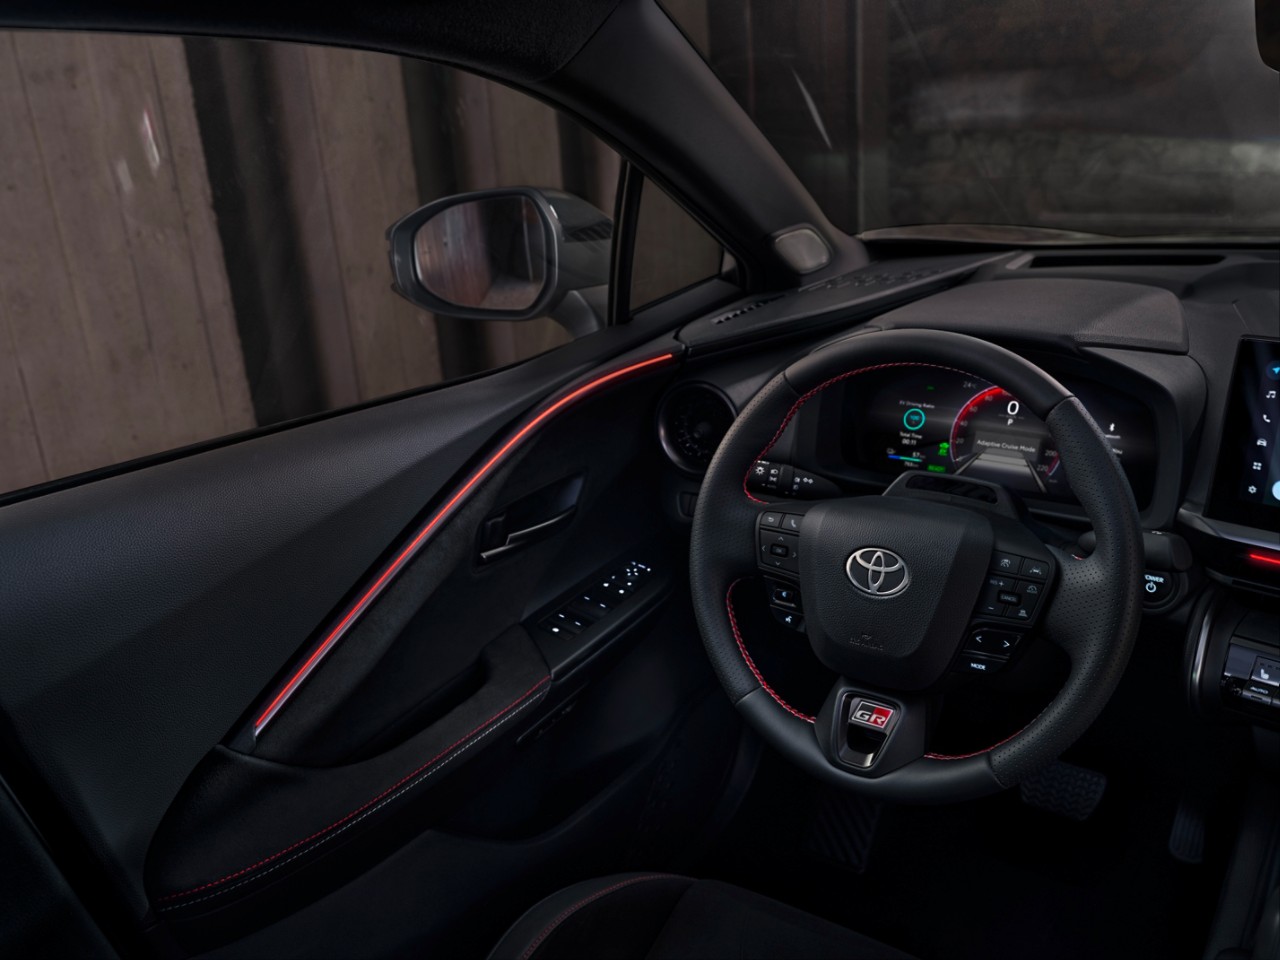 Interior Toyota C-HR